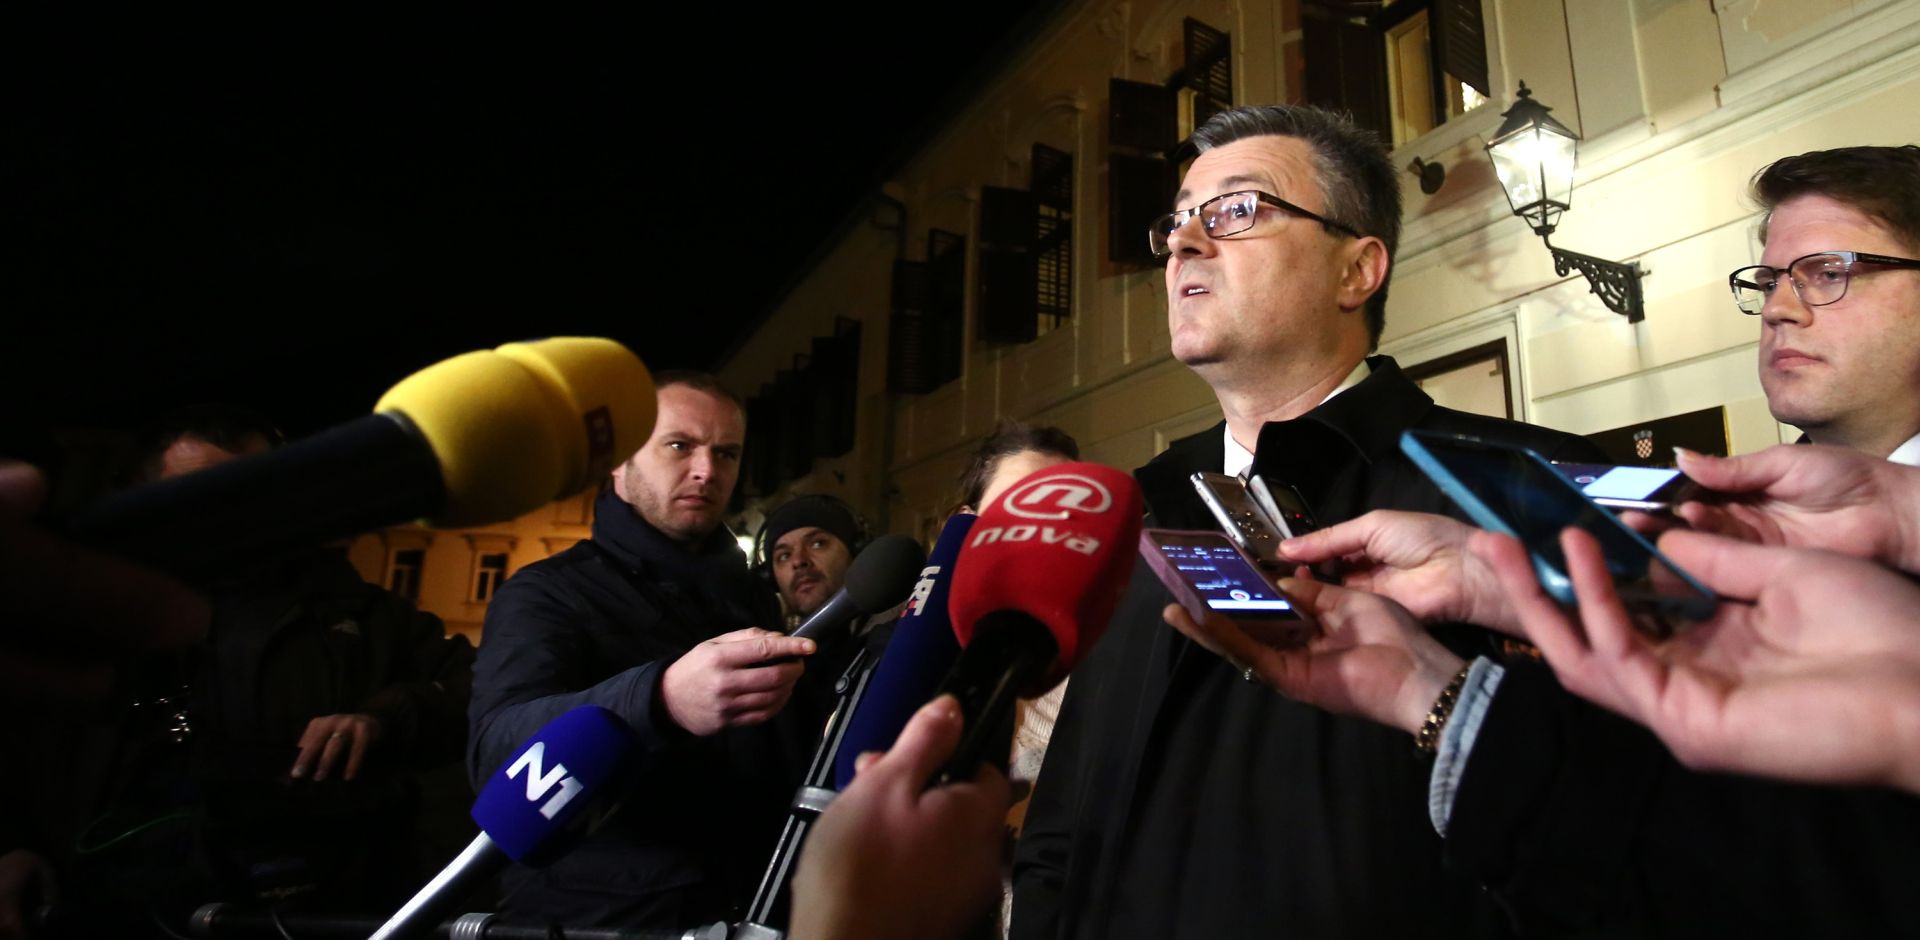 Premijer Tihomir Oreskovic ispred Vlade obratio se medijima te i sluzbeno potvrdio da je Mijo Crnoja podnio ostavku. Photo: Sanjin Strukic/PIXSELL